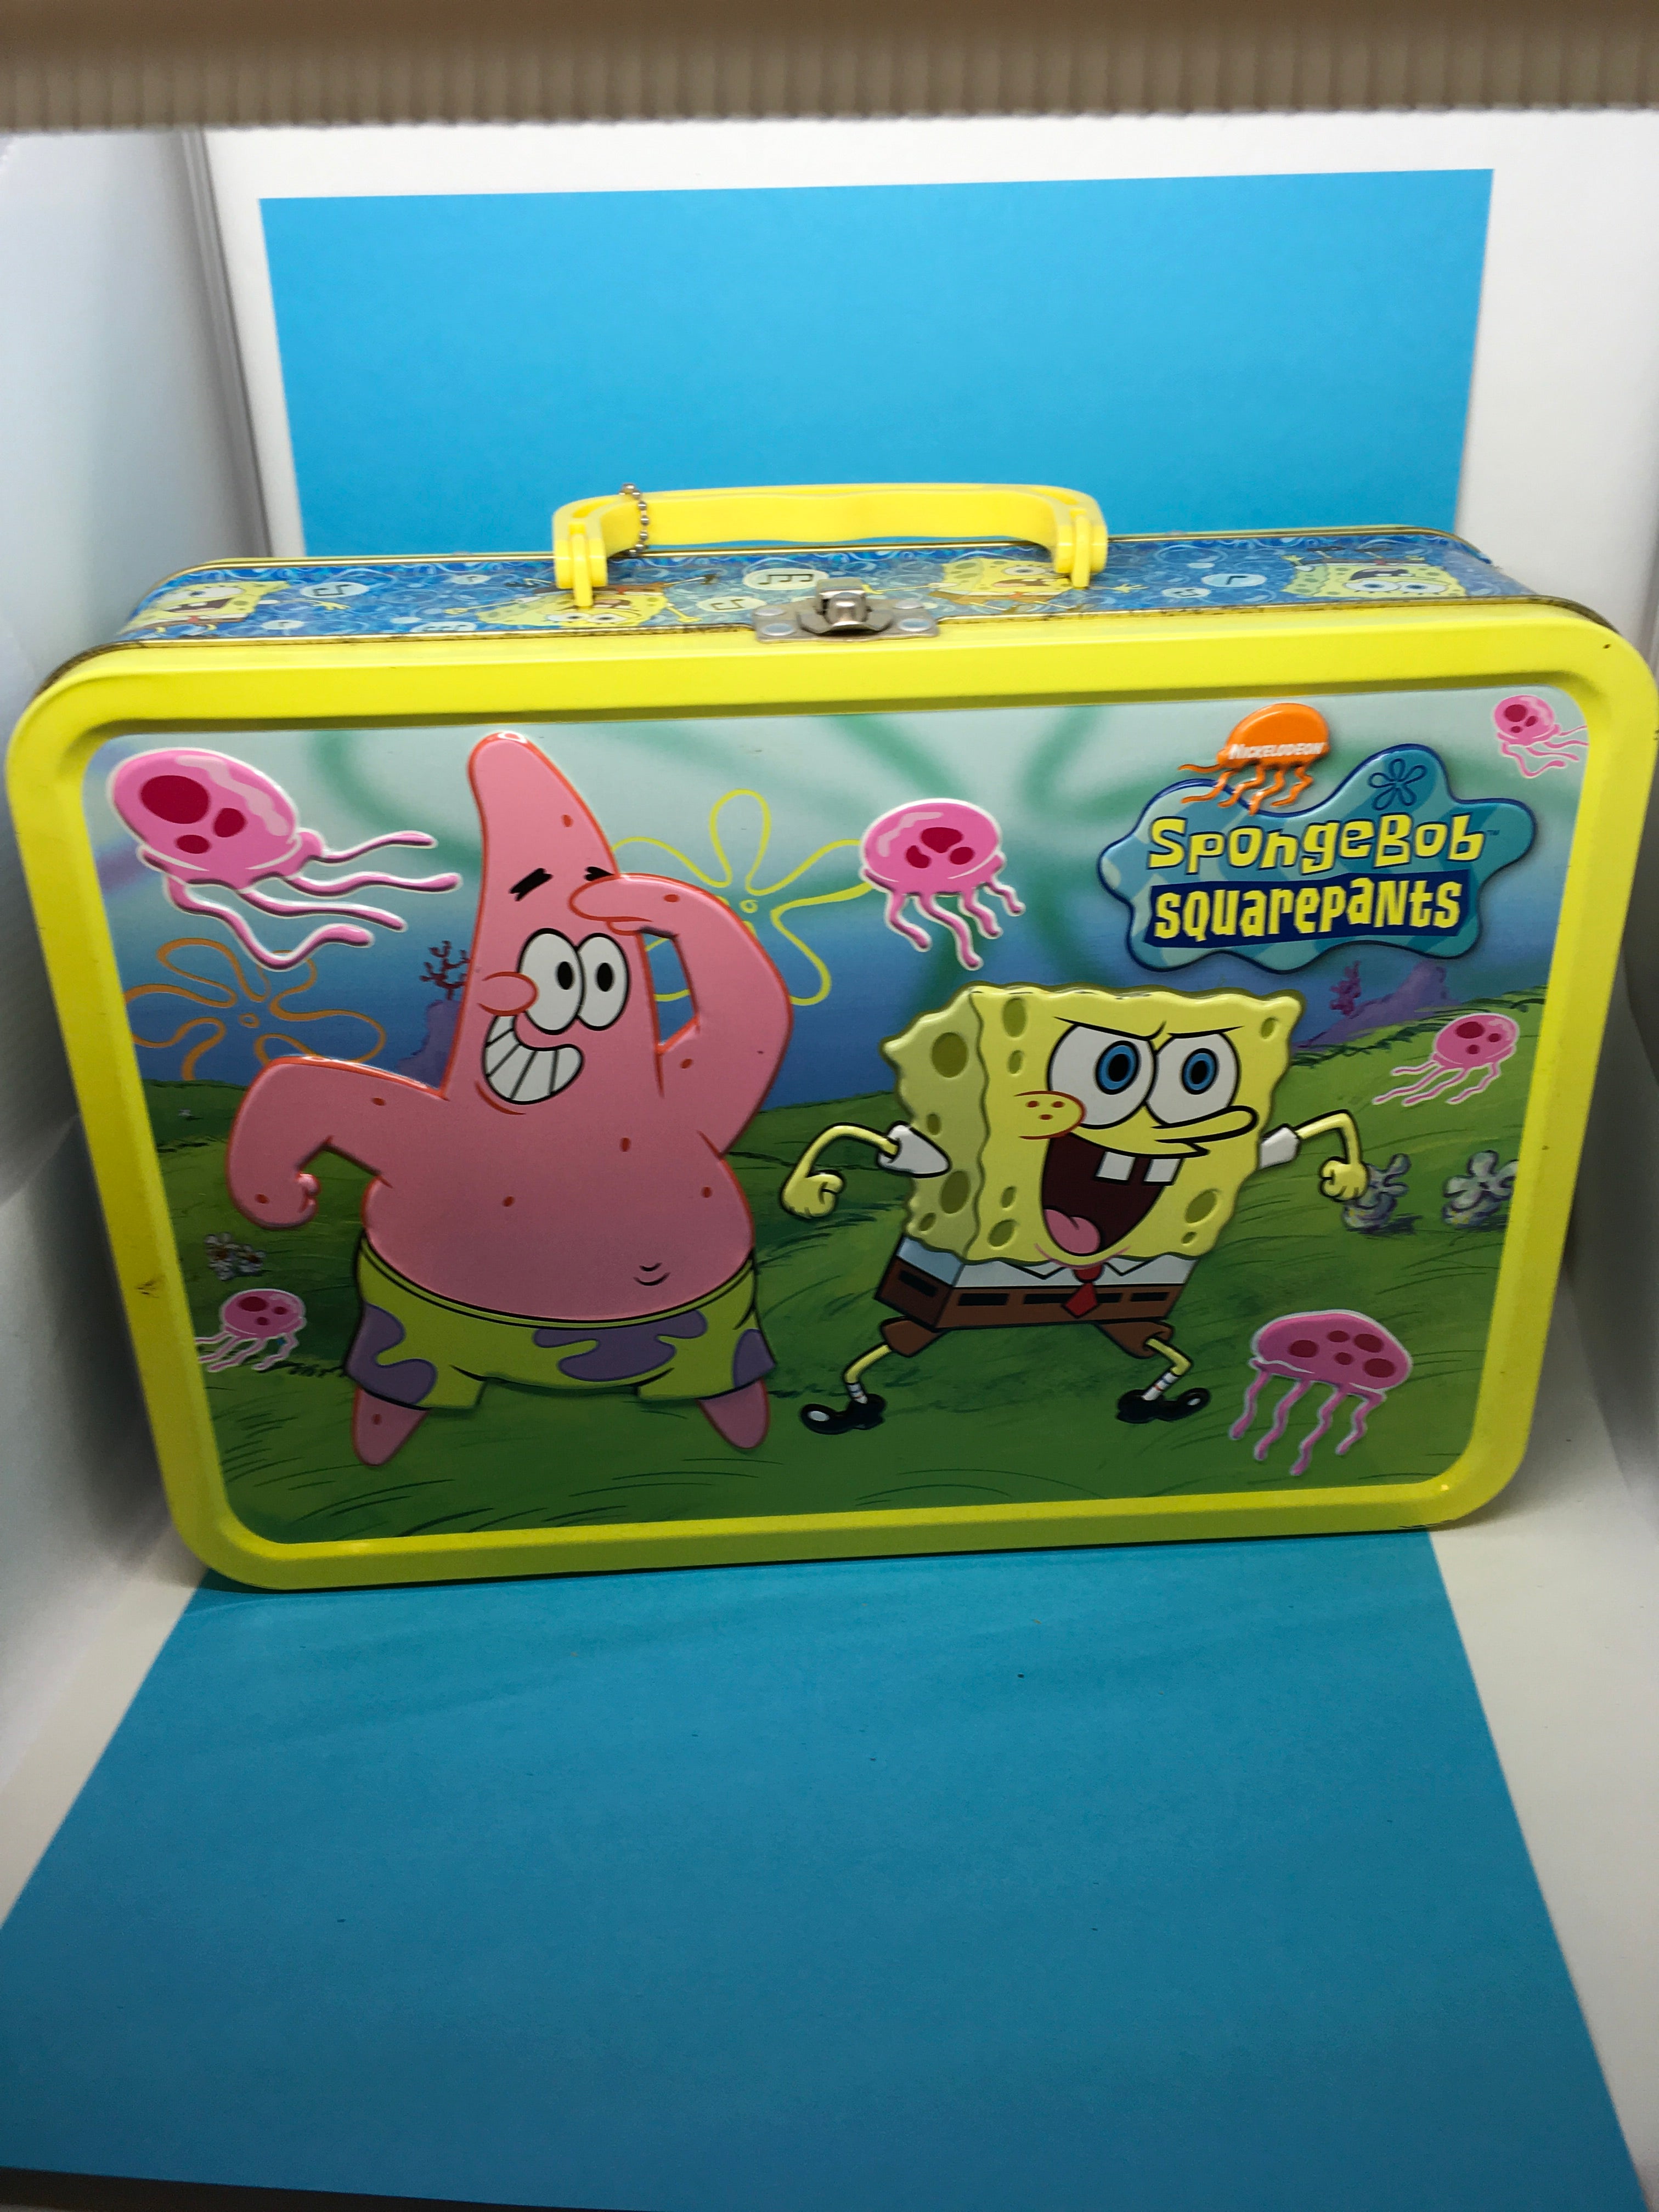 SpongeBob SquarePants HUGE 14x9x4 Viacom Lunch Box c. 2005